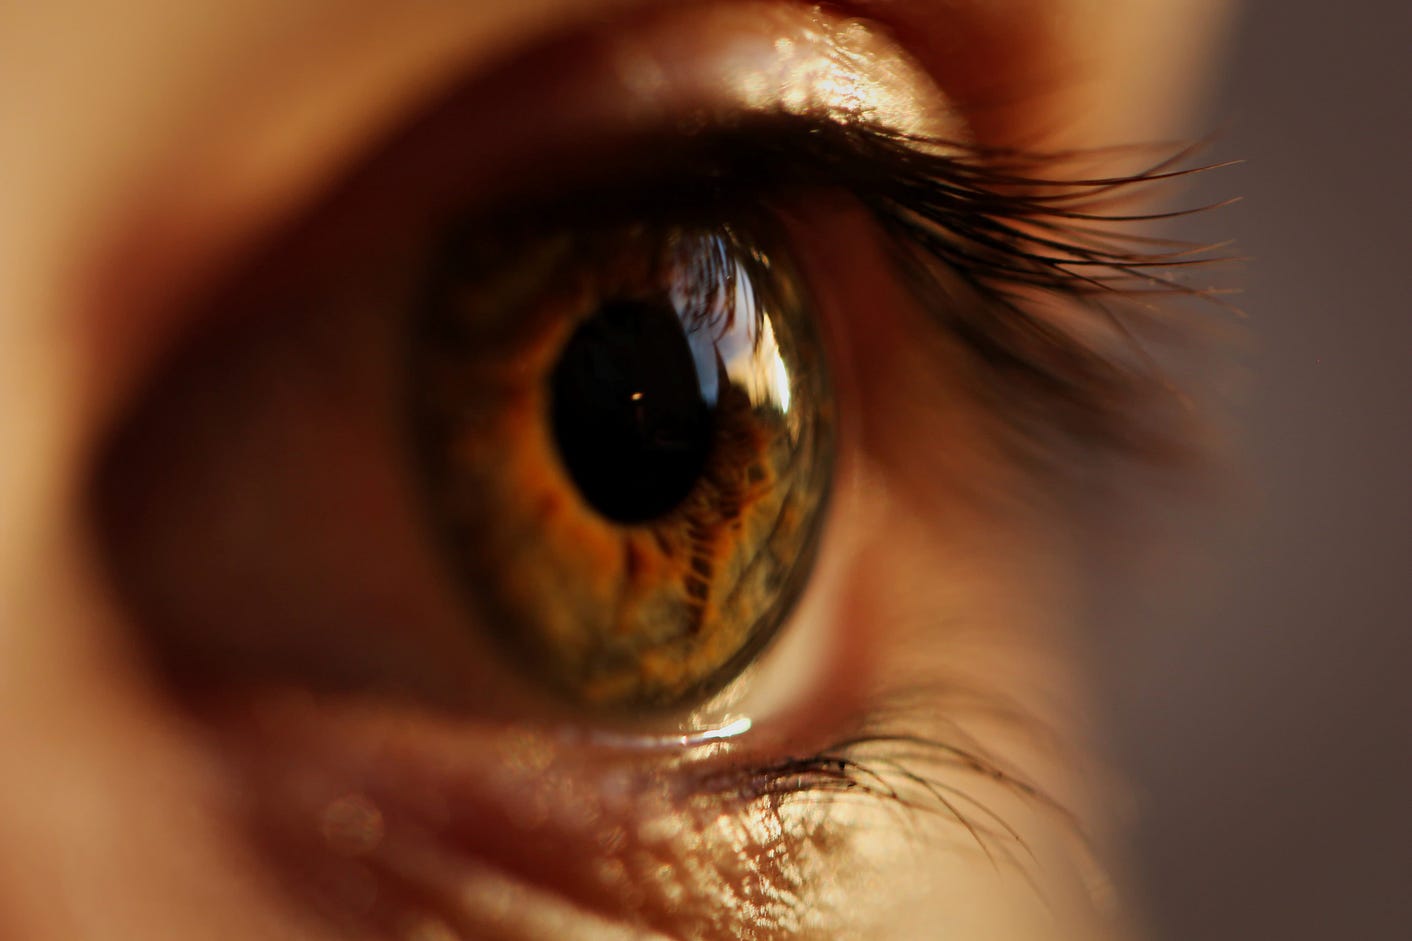 Close-up of an eye.